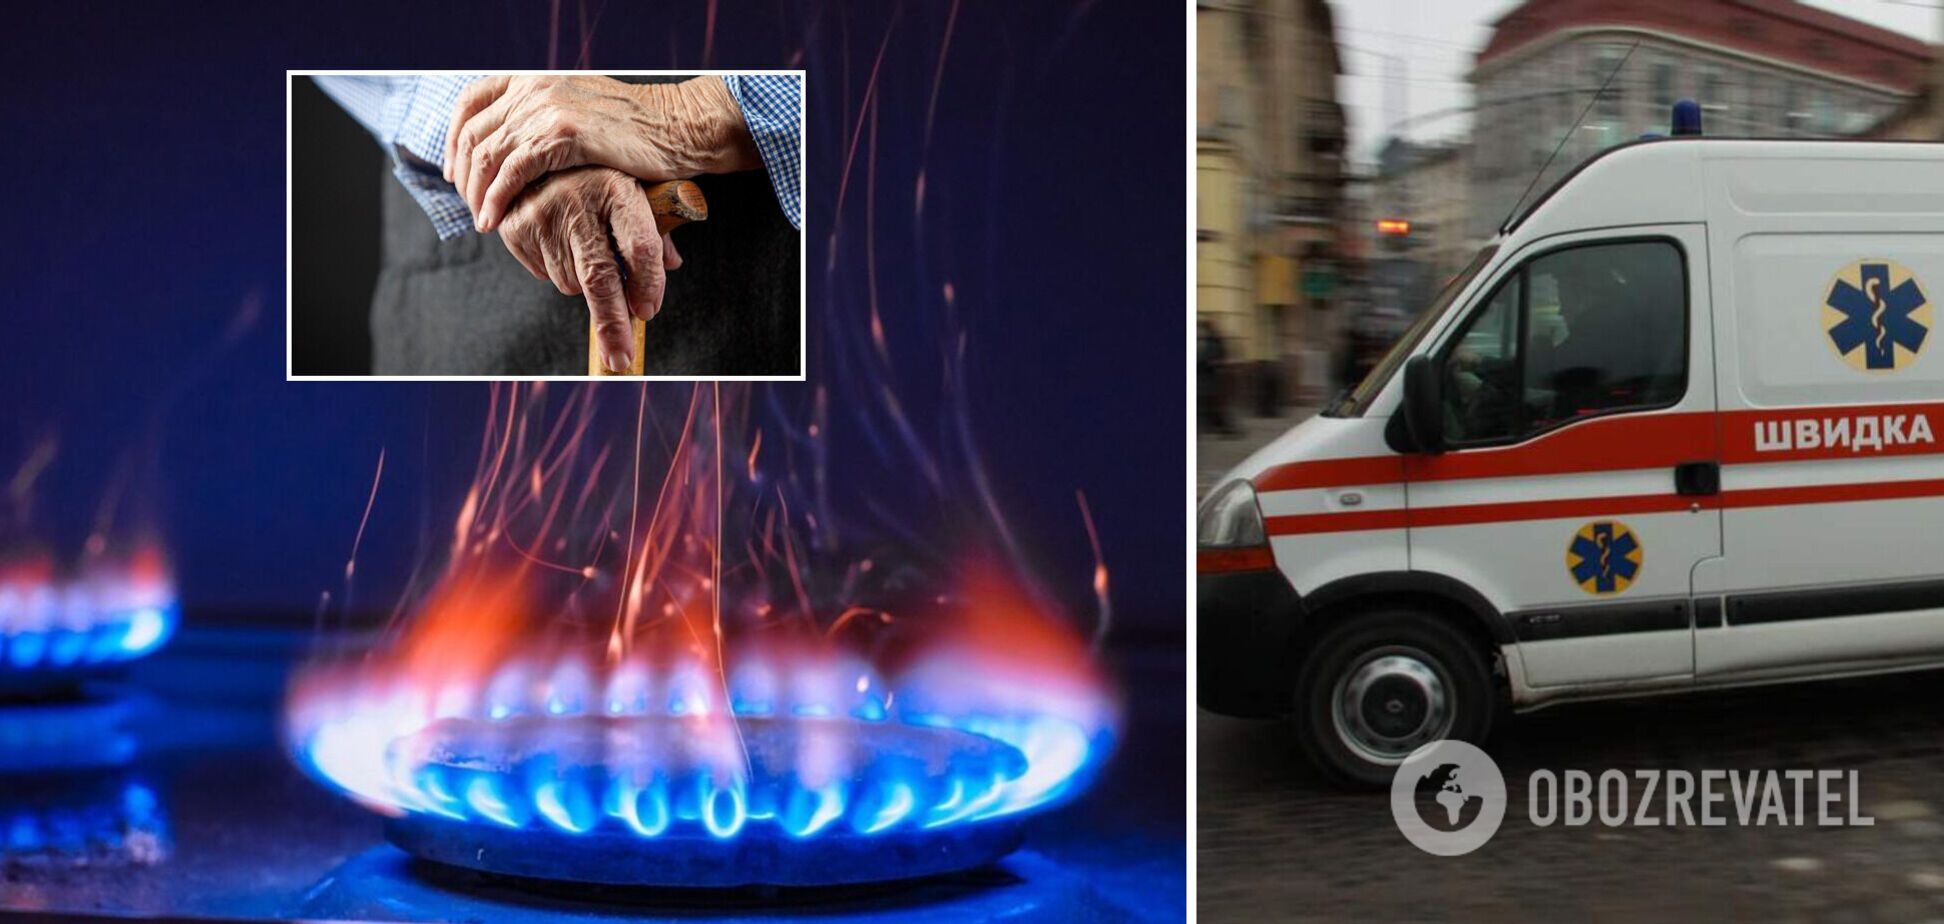 В Запорожье мужчина потерял сознание и упал на газовую плиту: он получил тяжелые ожоги